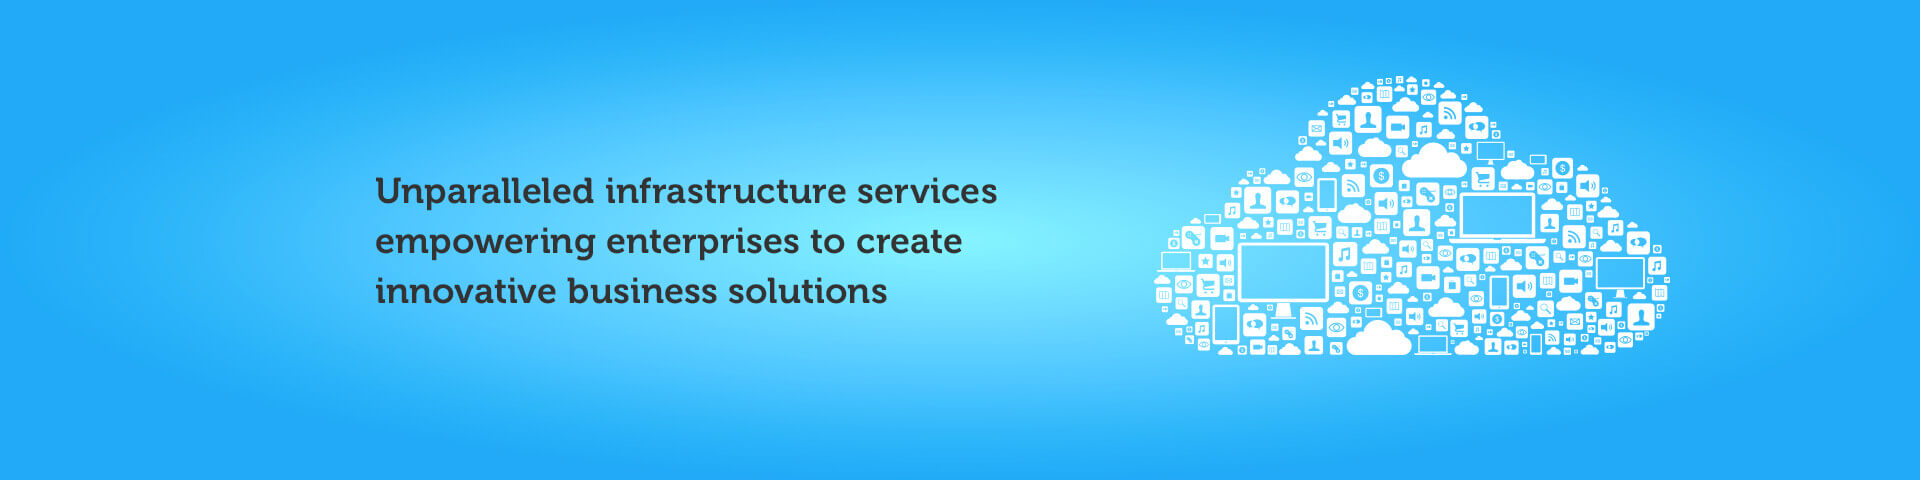 Cloud Infrastructure cloud infrastructure platform